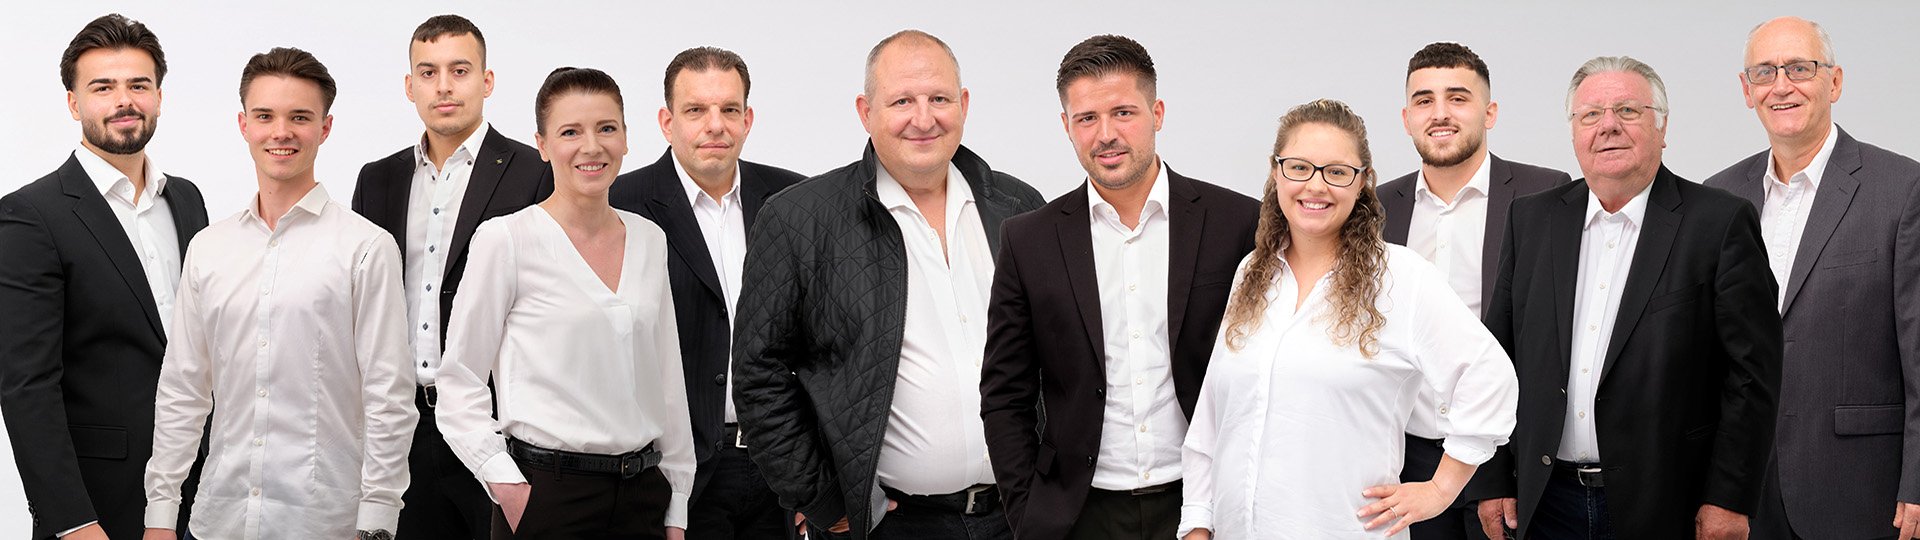 DBV Fellbach Stiefele GmbH | Unser Team